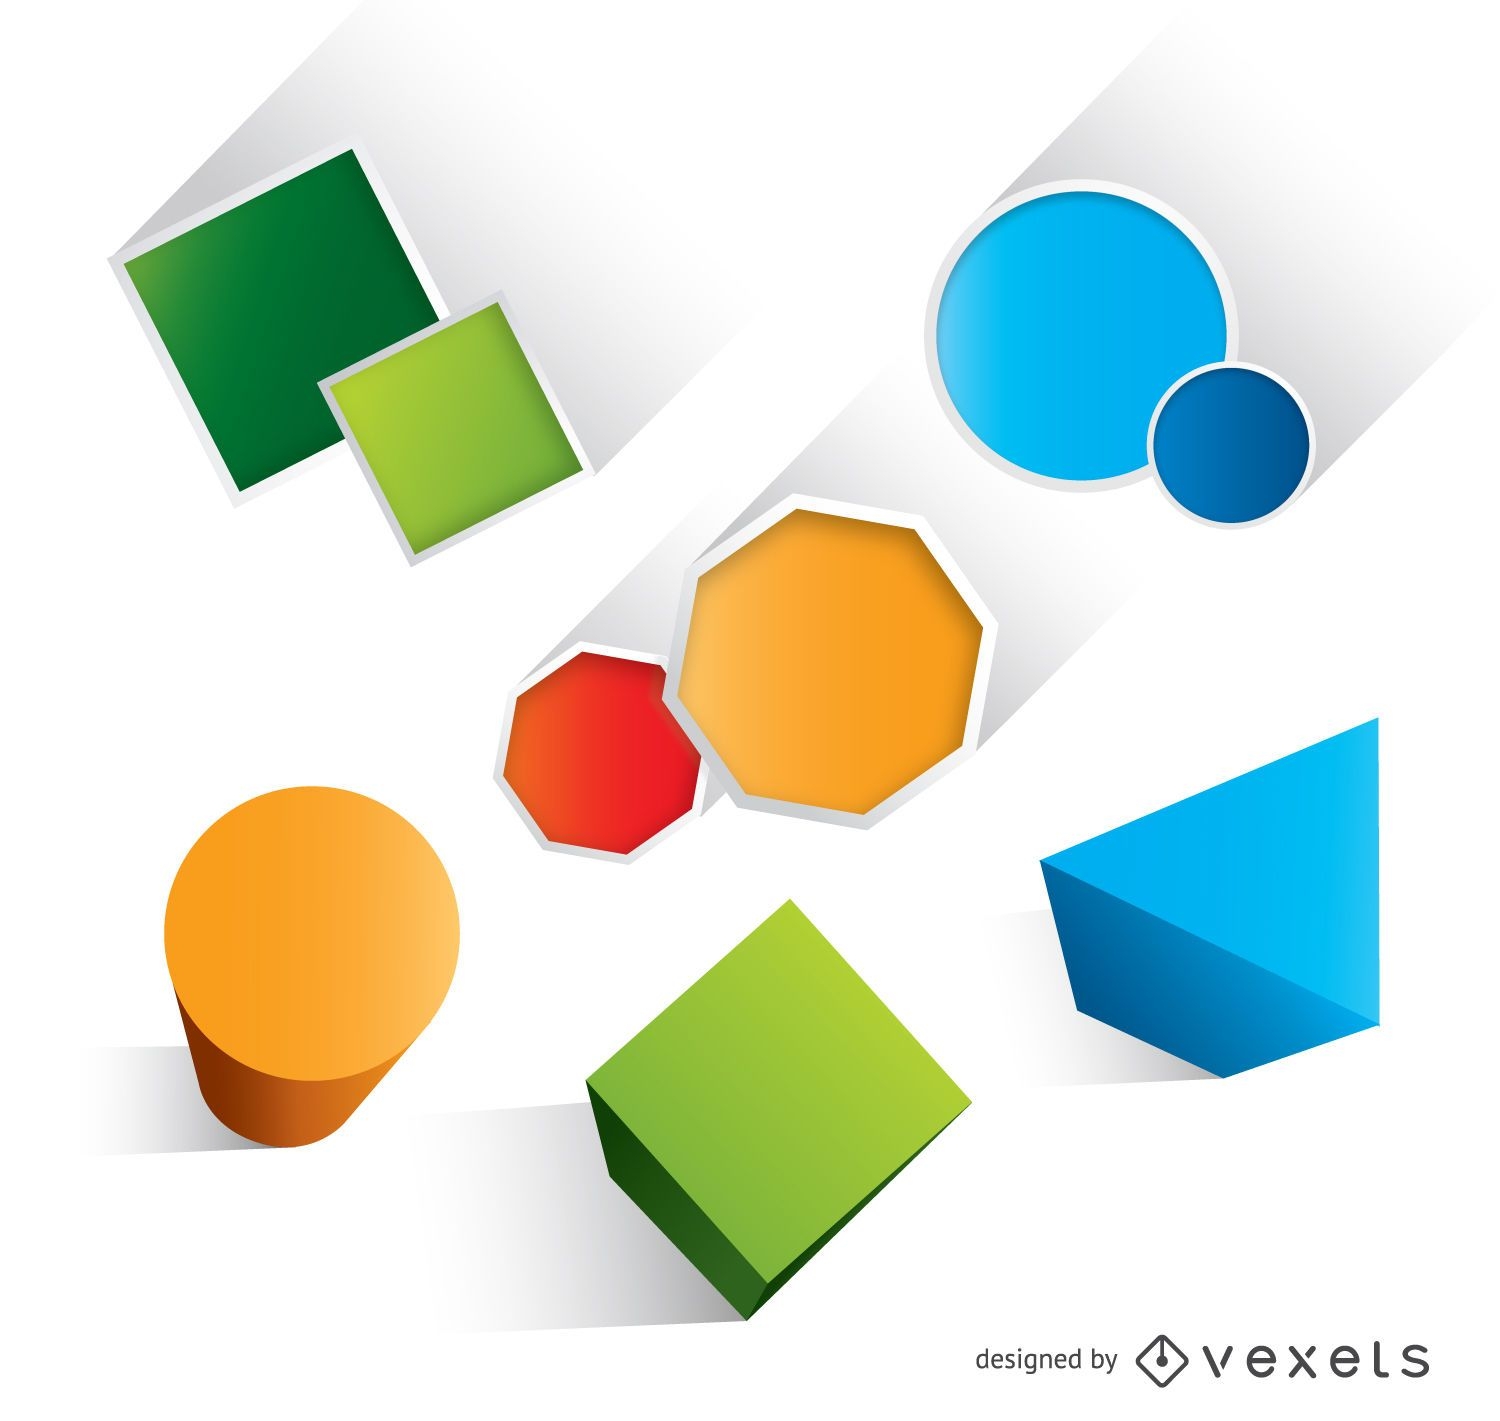 Geometric basic colorful shapes